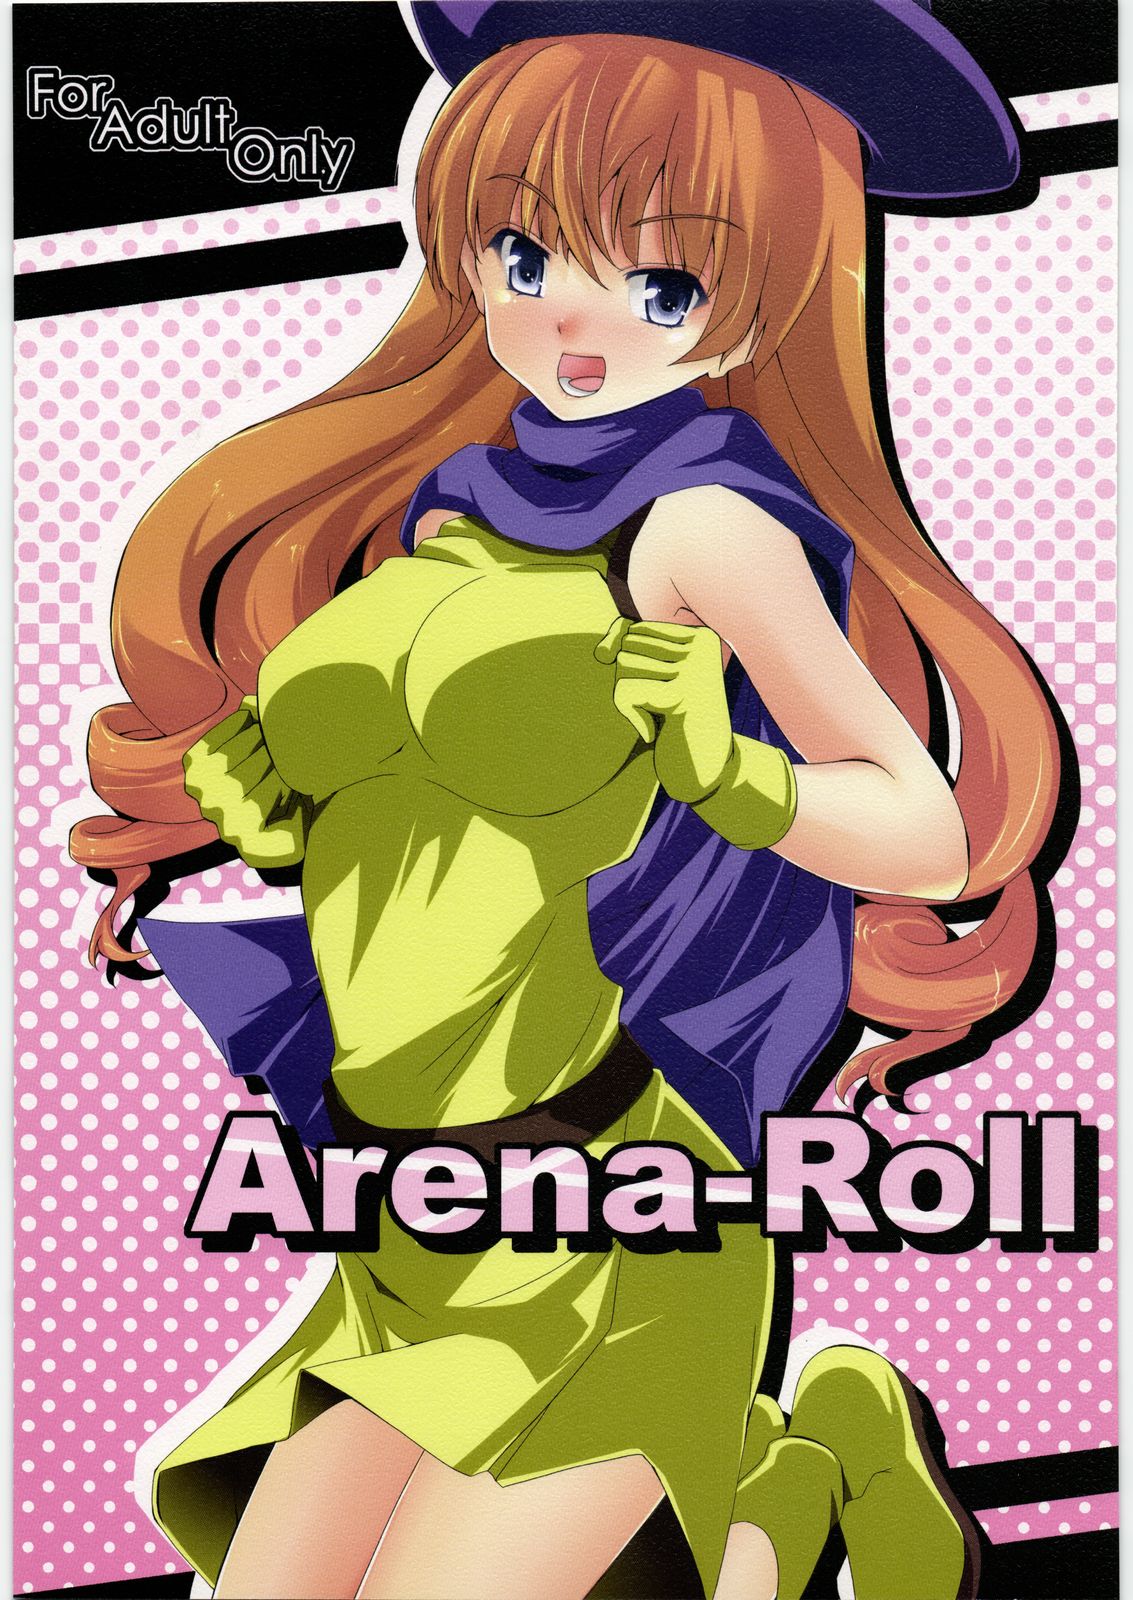 [Setsunasamidare] Arena-Roll [せつなさみだれ] Arena-Roll